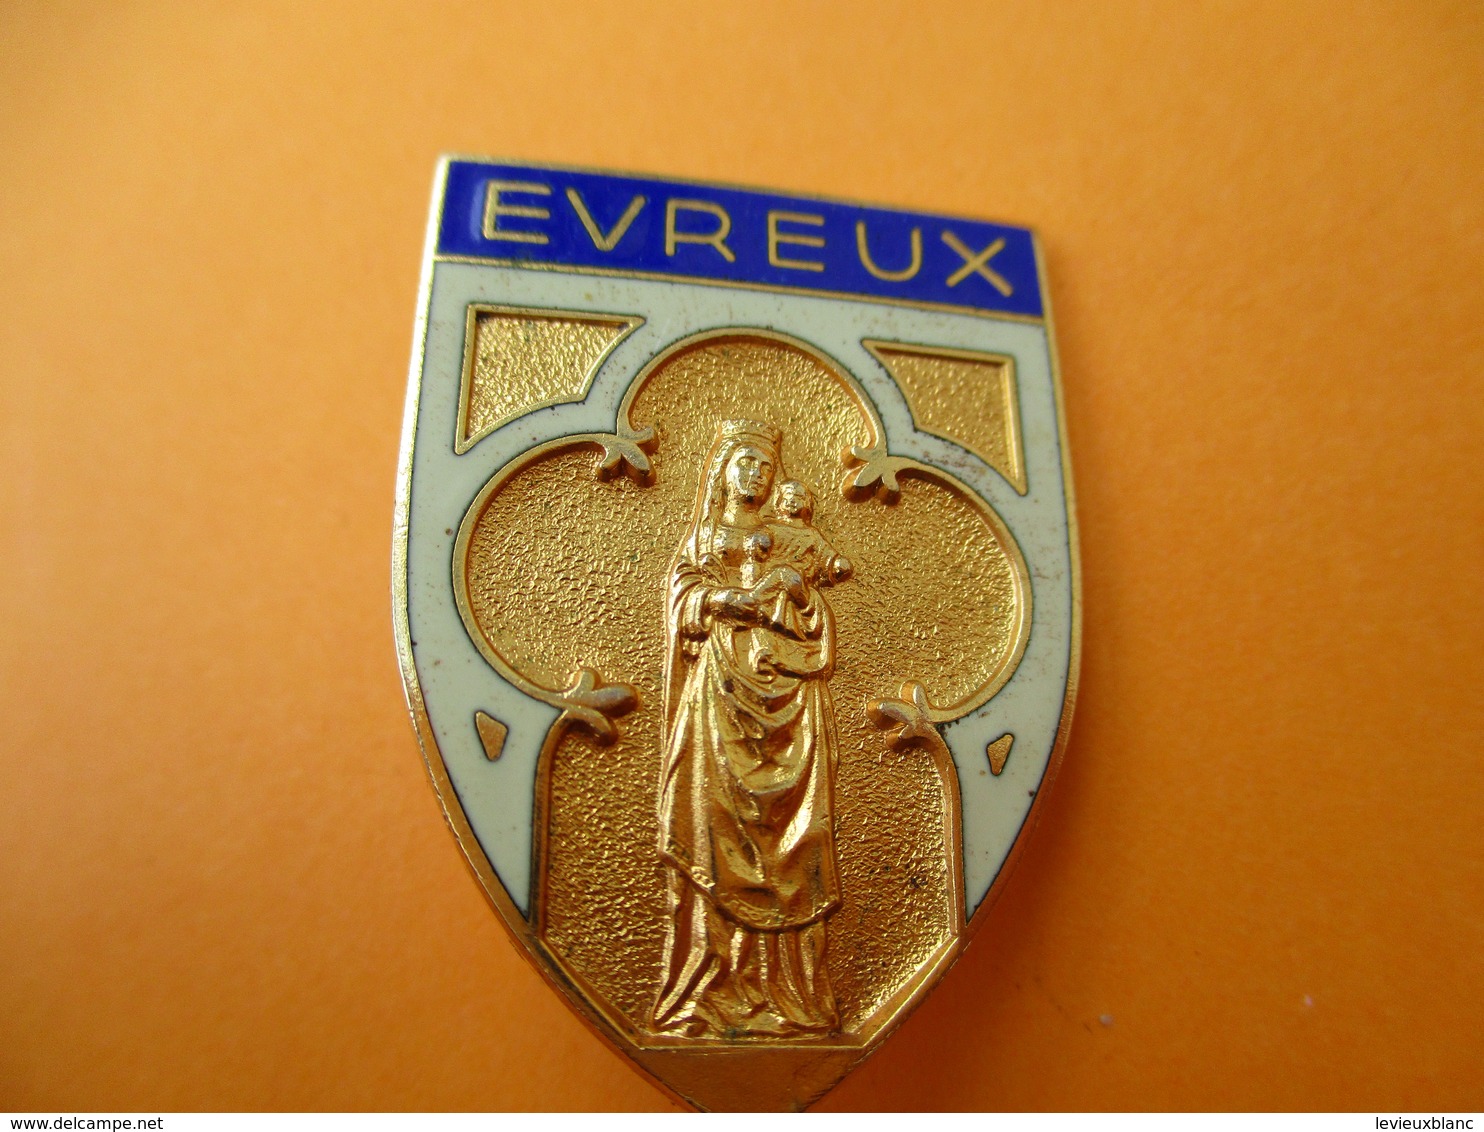 Insigne De Pélérinage à épingle / EVREUX / Chobillon Paris /Vers 1920-1950     CAN774 - Religion & Esotericism